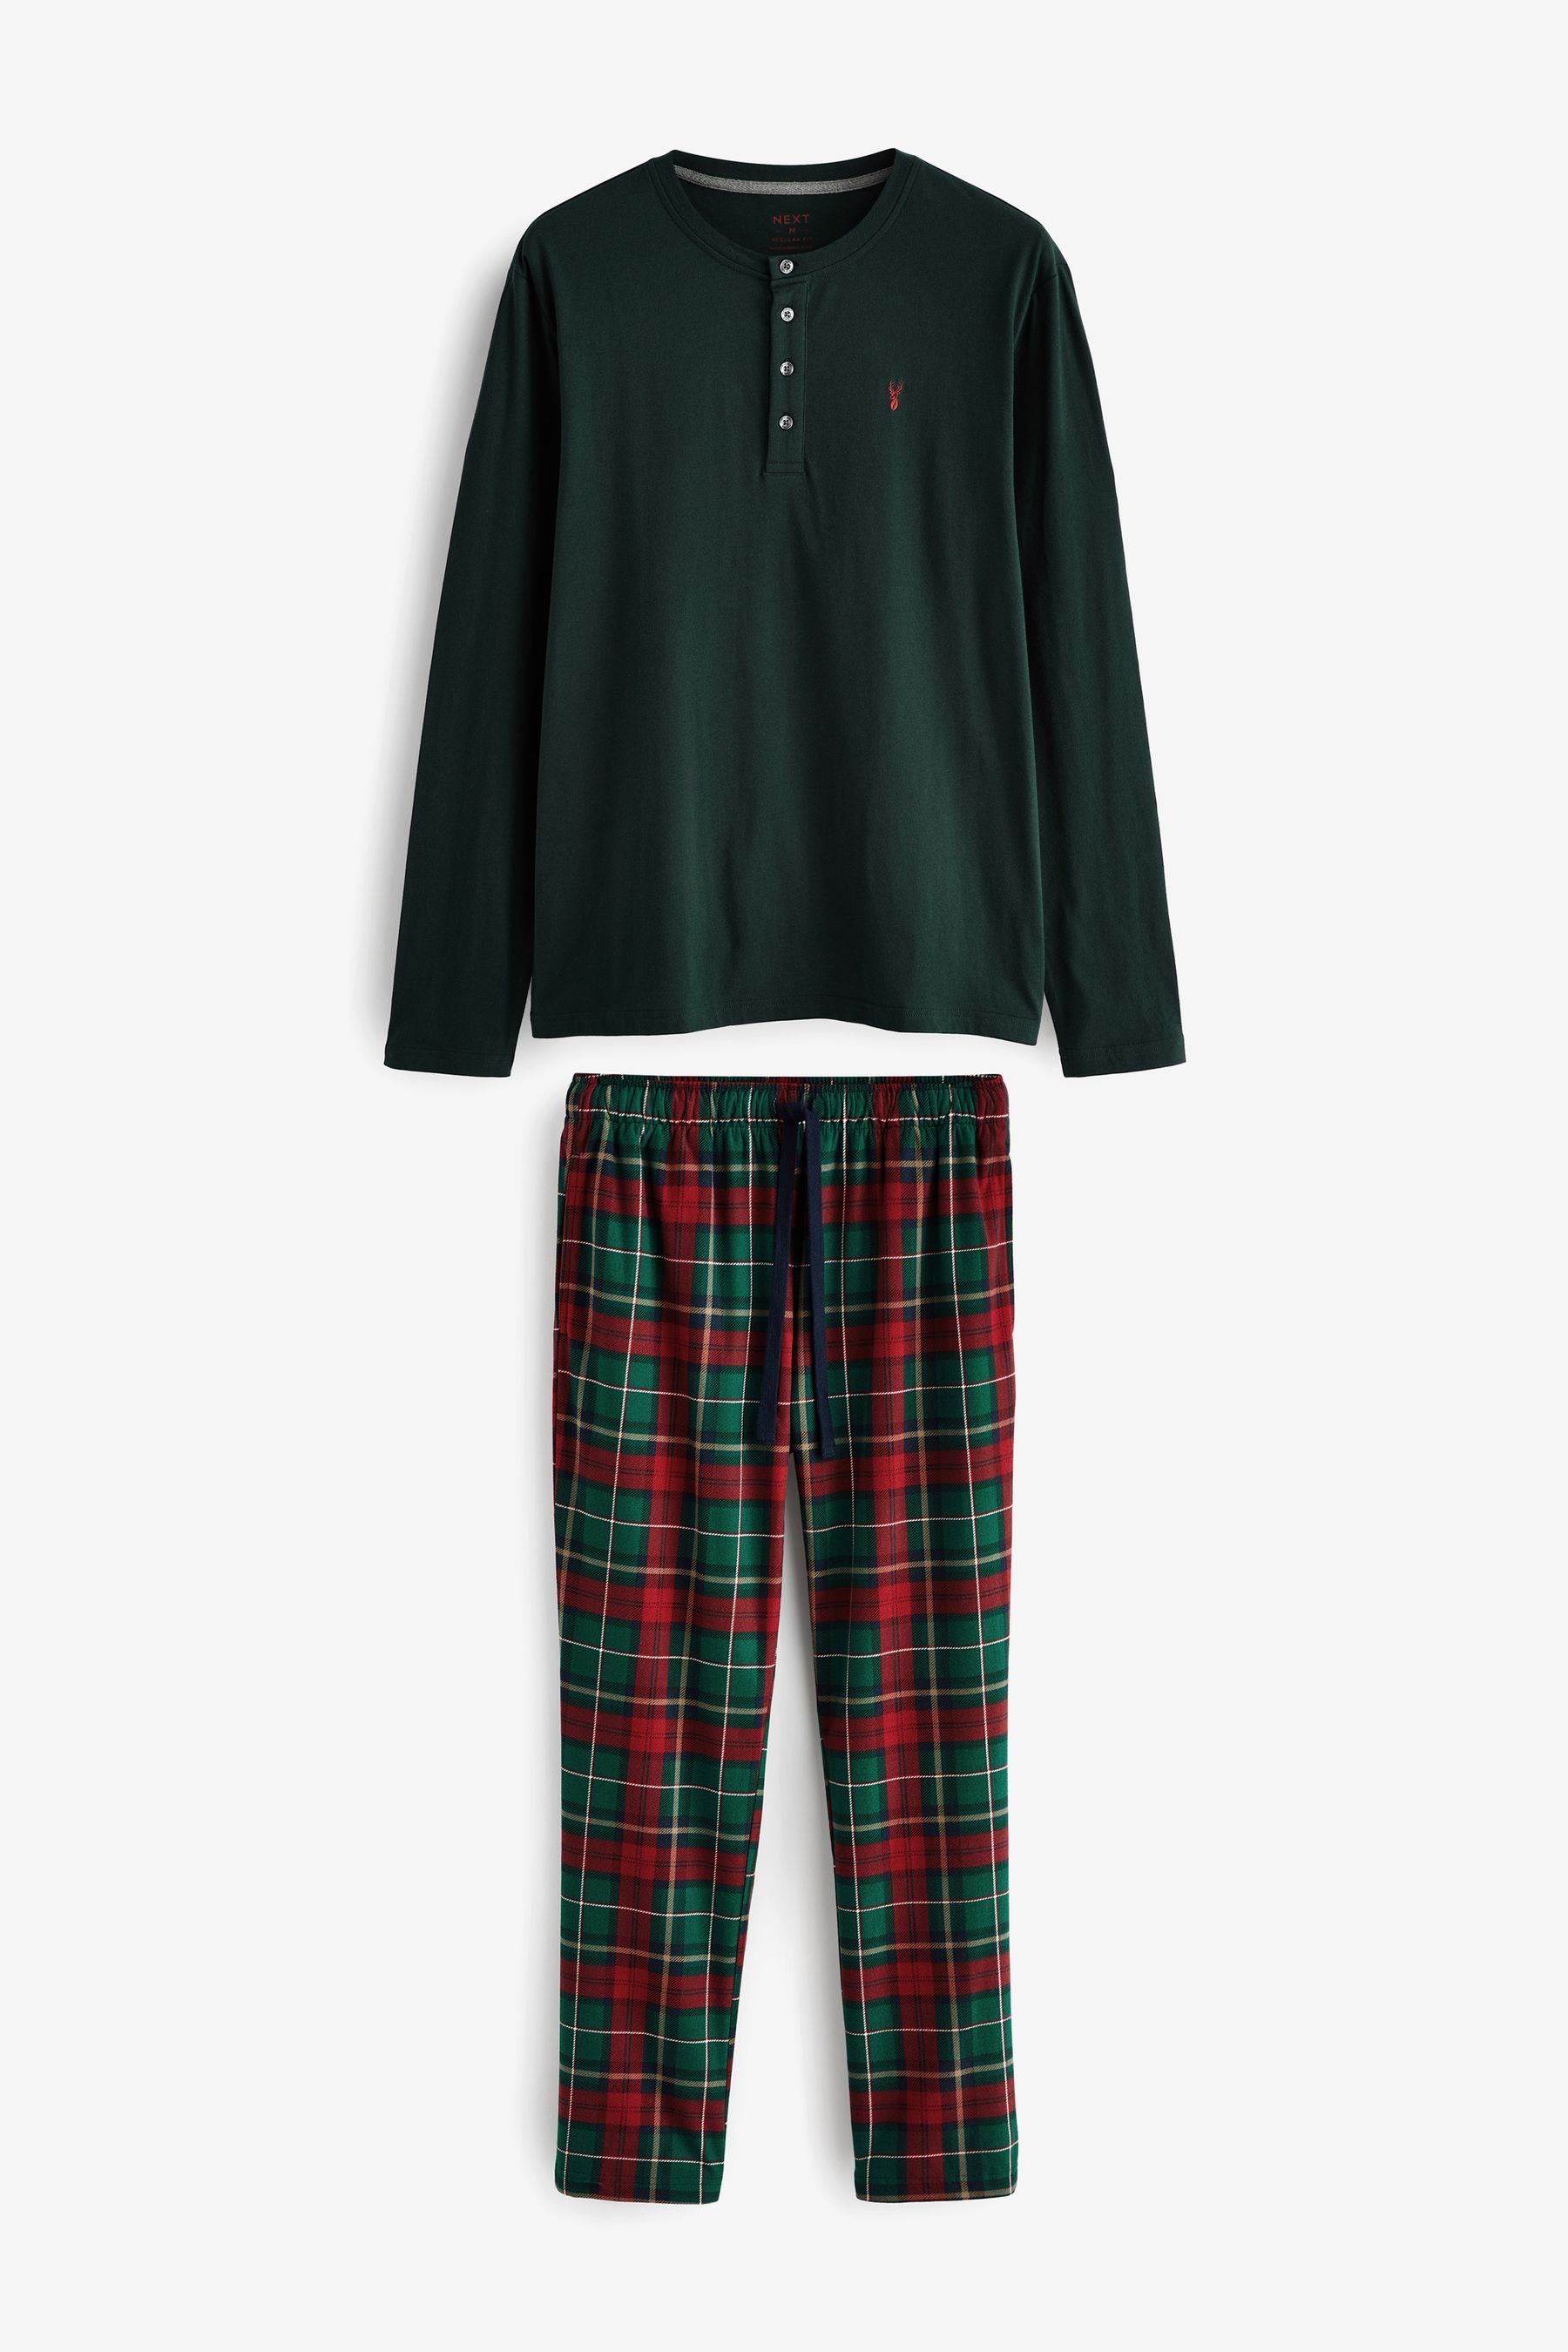 Next Pyjama Bequemer Motionflex Schlafanzug (2 tlg) Green/Red Check